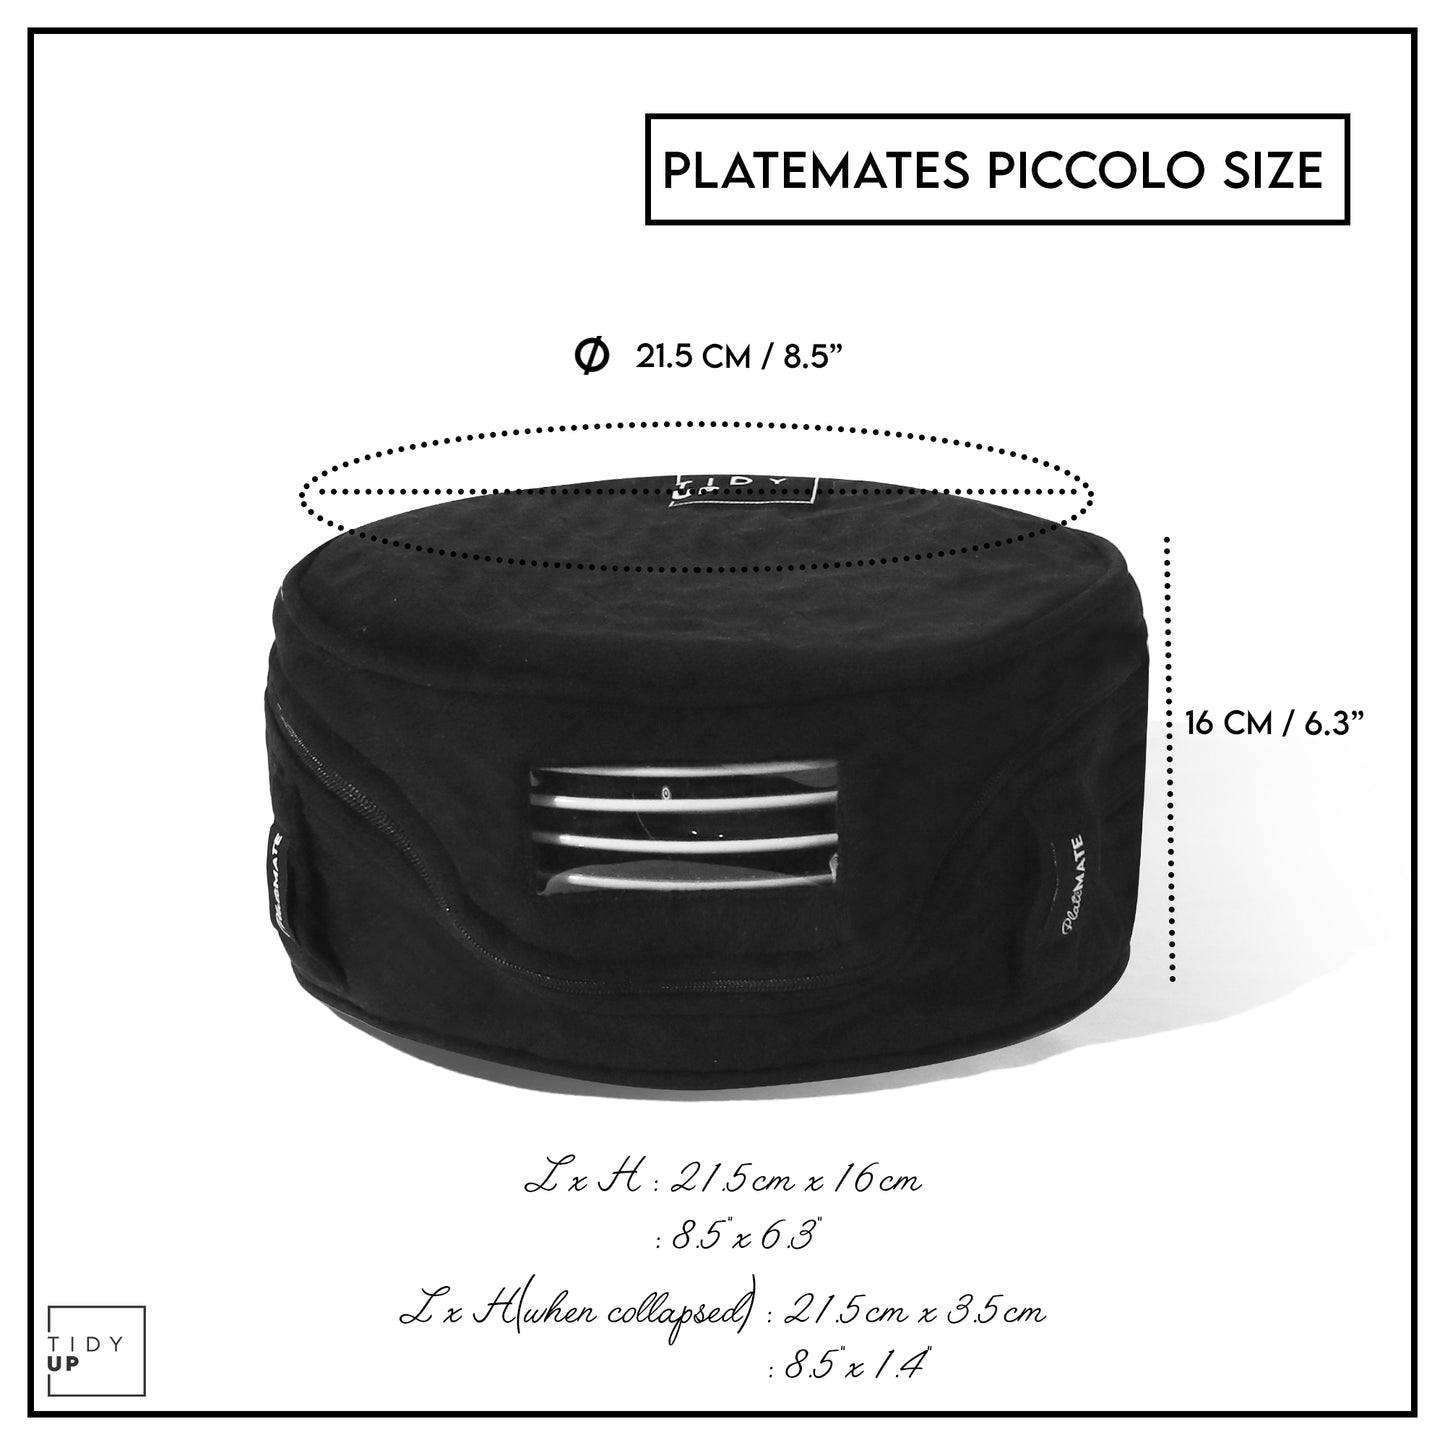 Platemates Piccolo